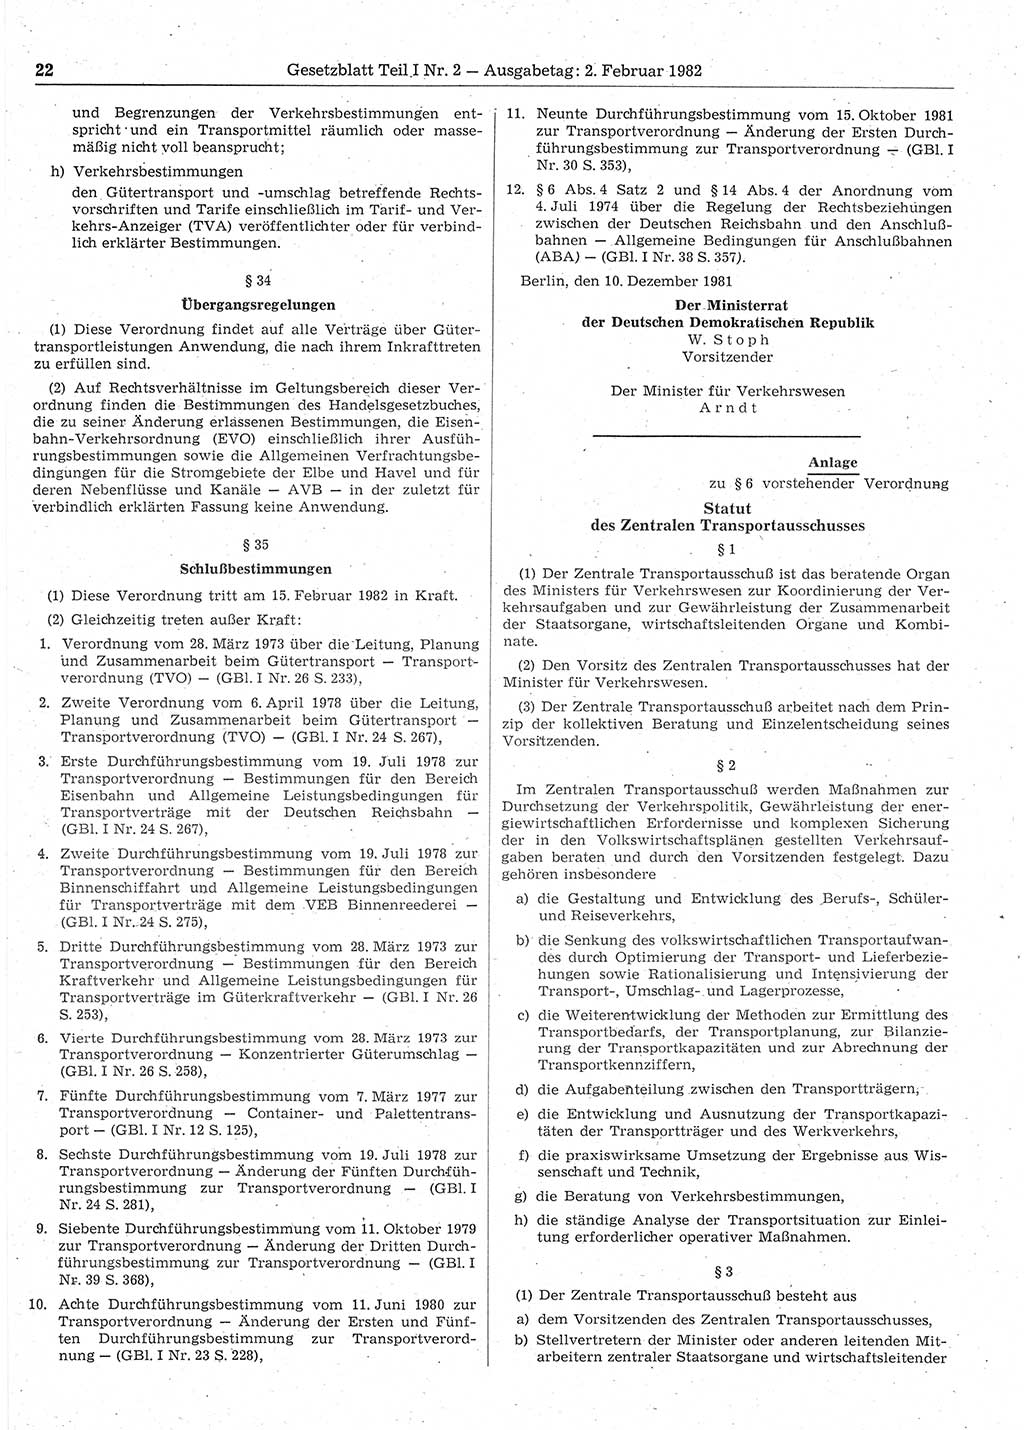 Gesetzblatt (GBl.) der Deutschen Demokratischen Republik (DDR) Teil Ⅰ 1982, Seite 22 (GBl. DDR Ⅰ 1982, S. 22)